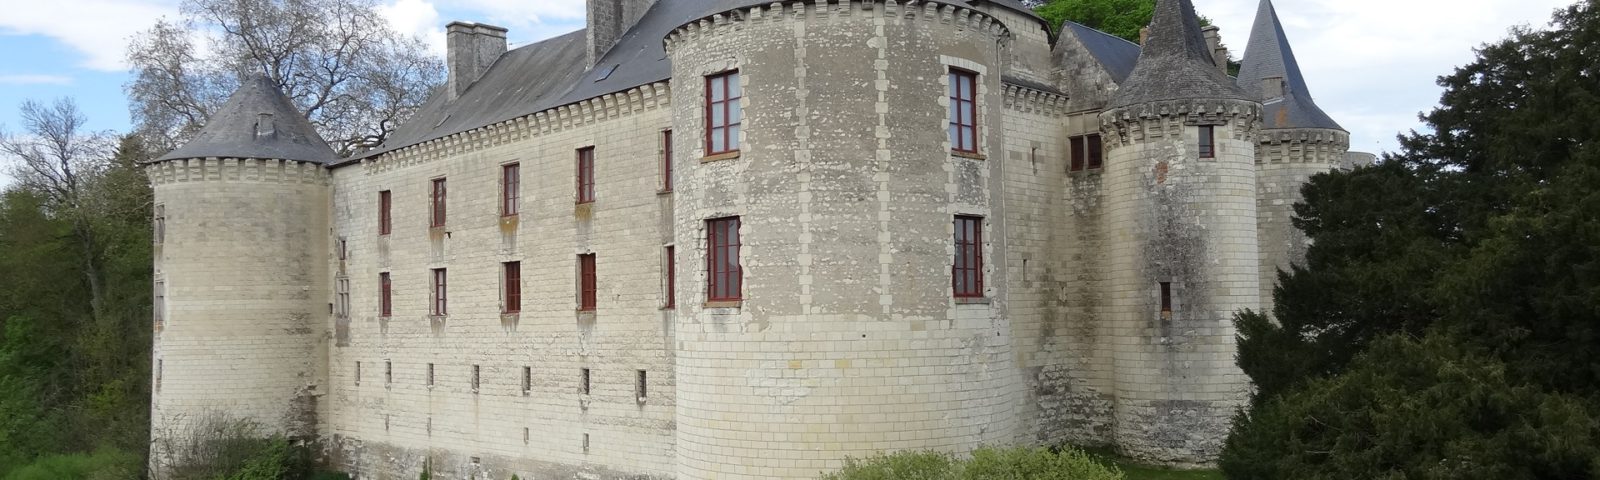 Chateau Guerche